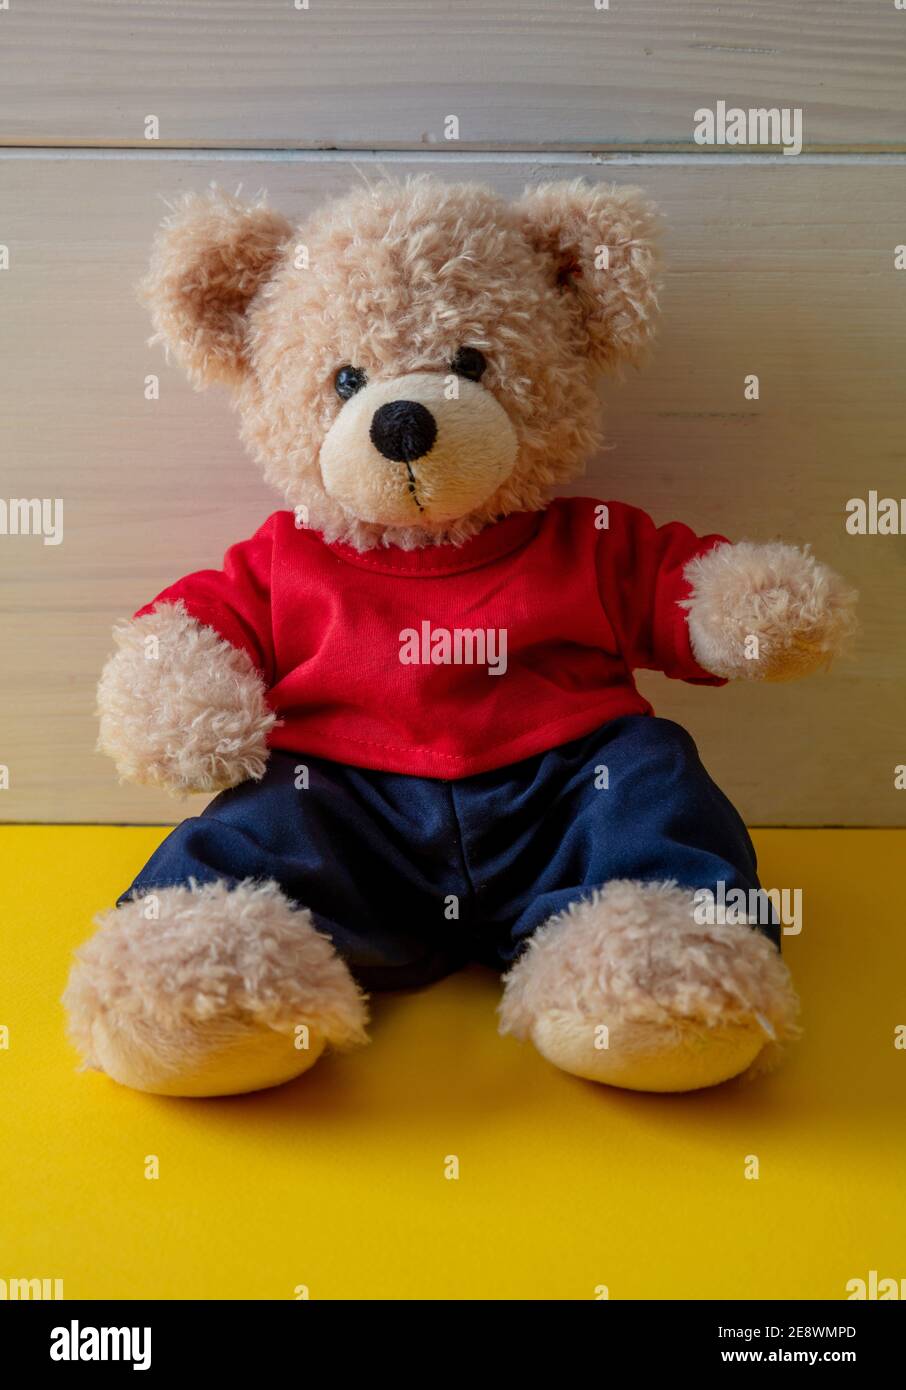 Teddybär sitzt in einem leeren Raum, gelber Boden, weißer Holzwandhintergrund, Kind allein trägt rotes T-Shirt im Kinderzimmer Stockfoto